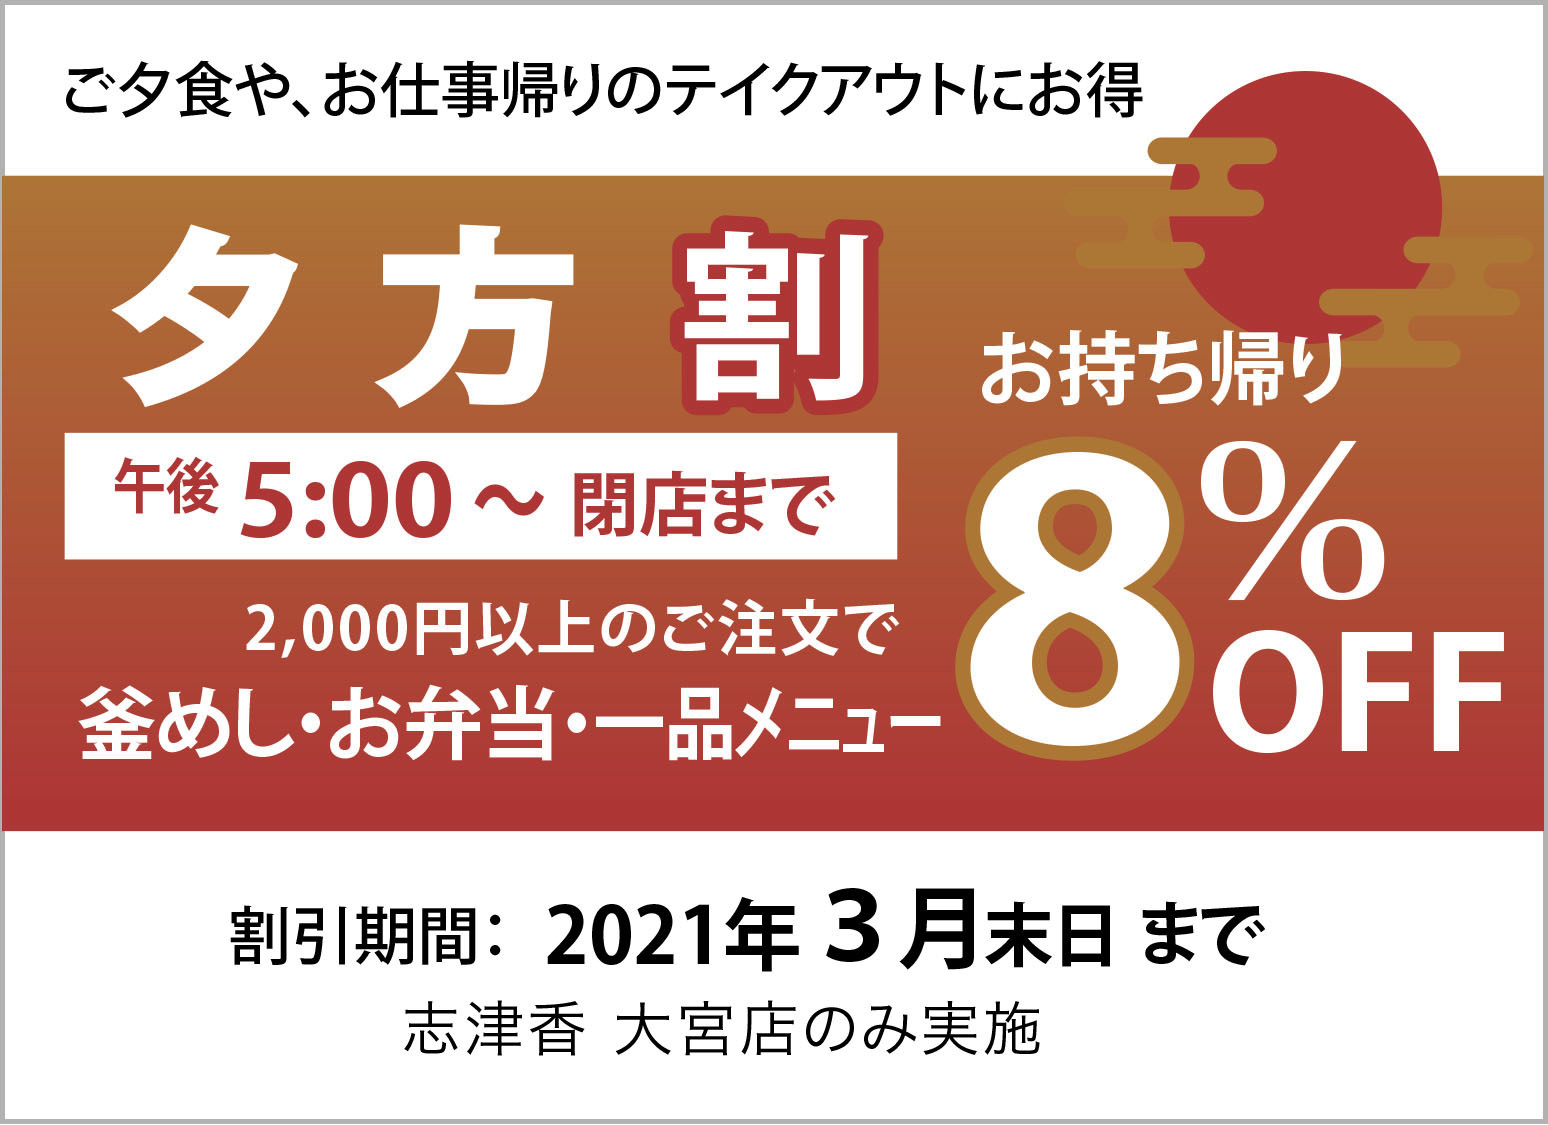 yugata_coupon_web.jpg